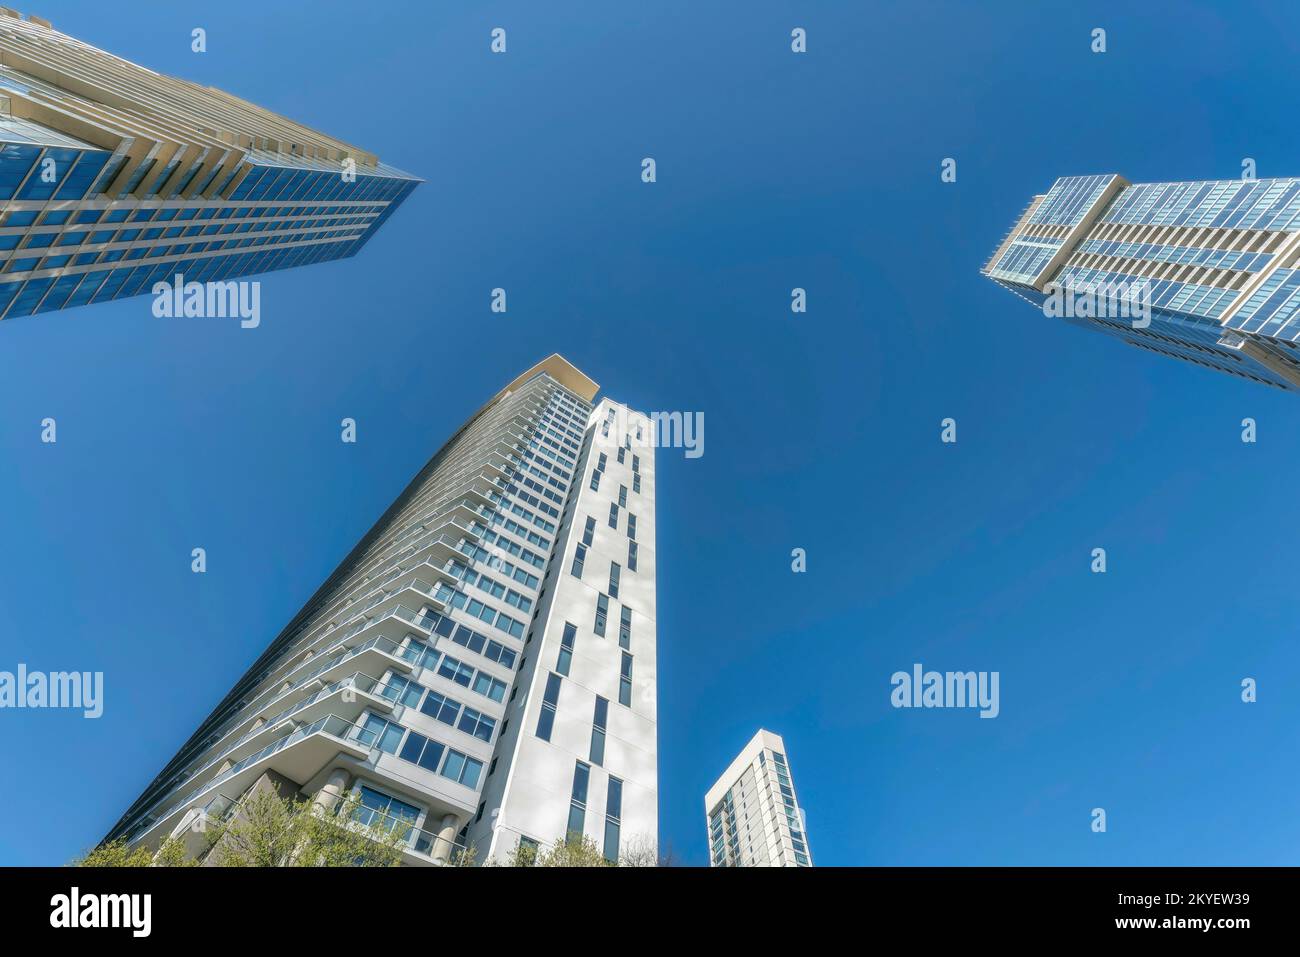 Esterno di appartamenti moderni e condimenti con sfondo blu cielo. Vedute architettoniche dello skyline del centro cittadino di Austin, Texas, con facciata torreggiante Foto Stock